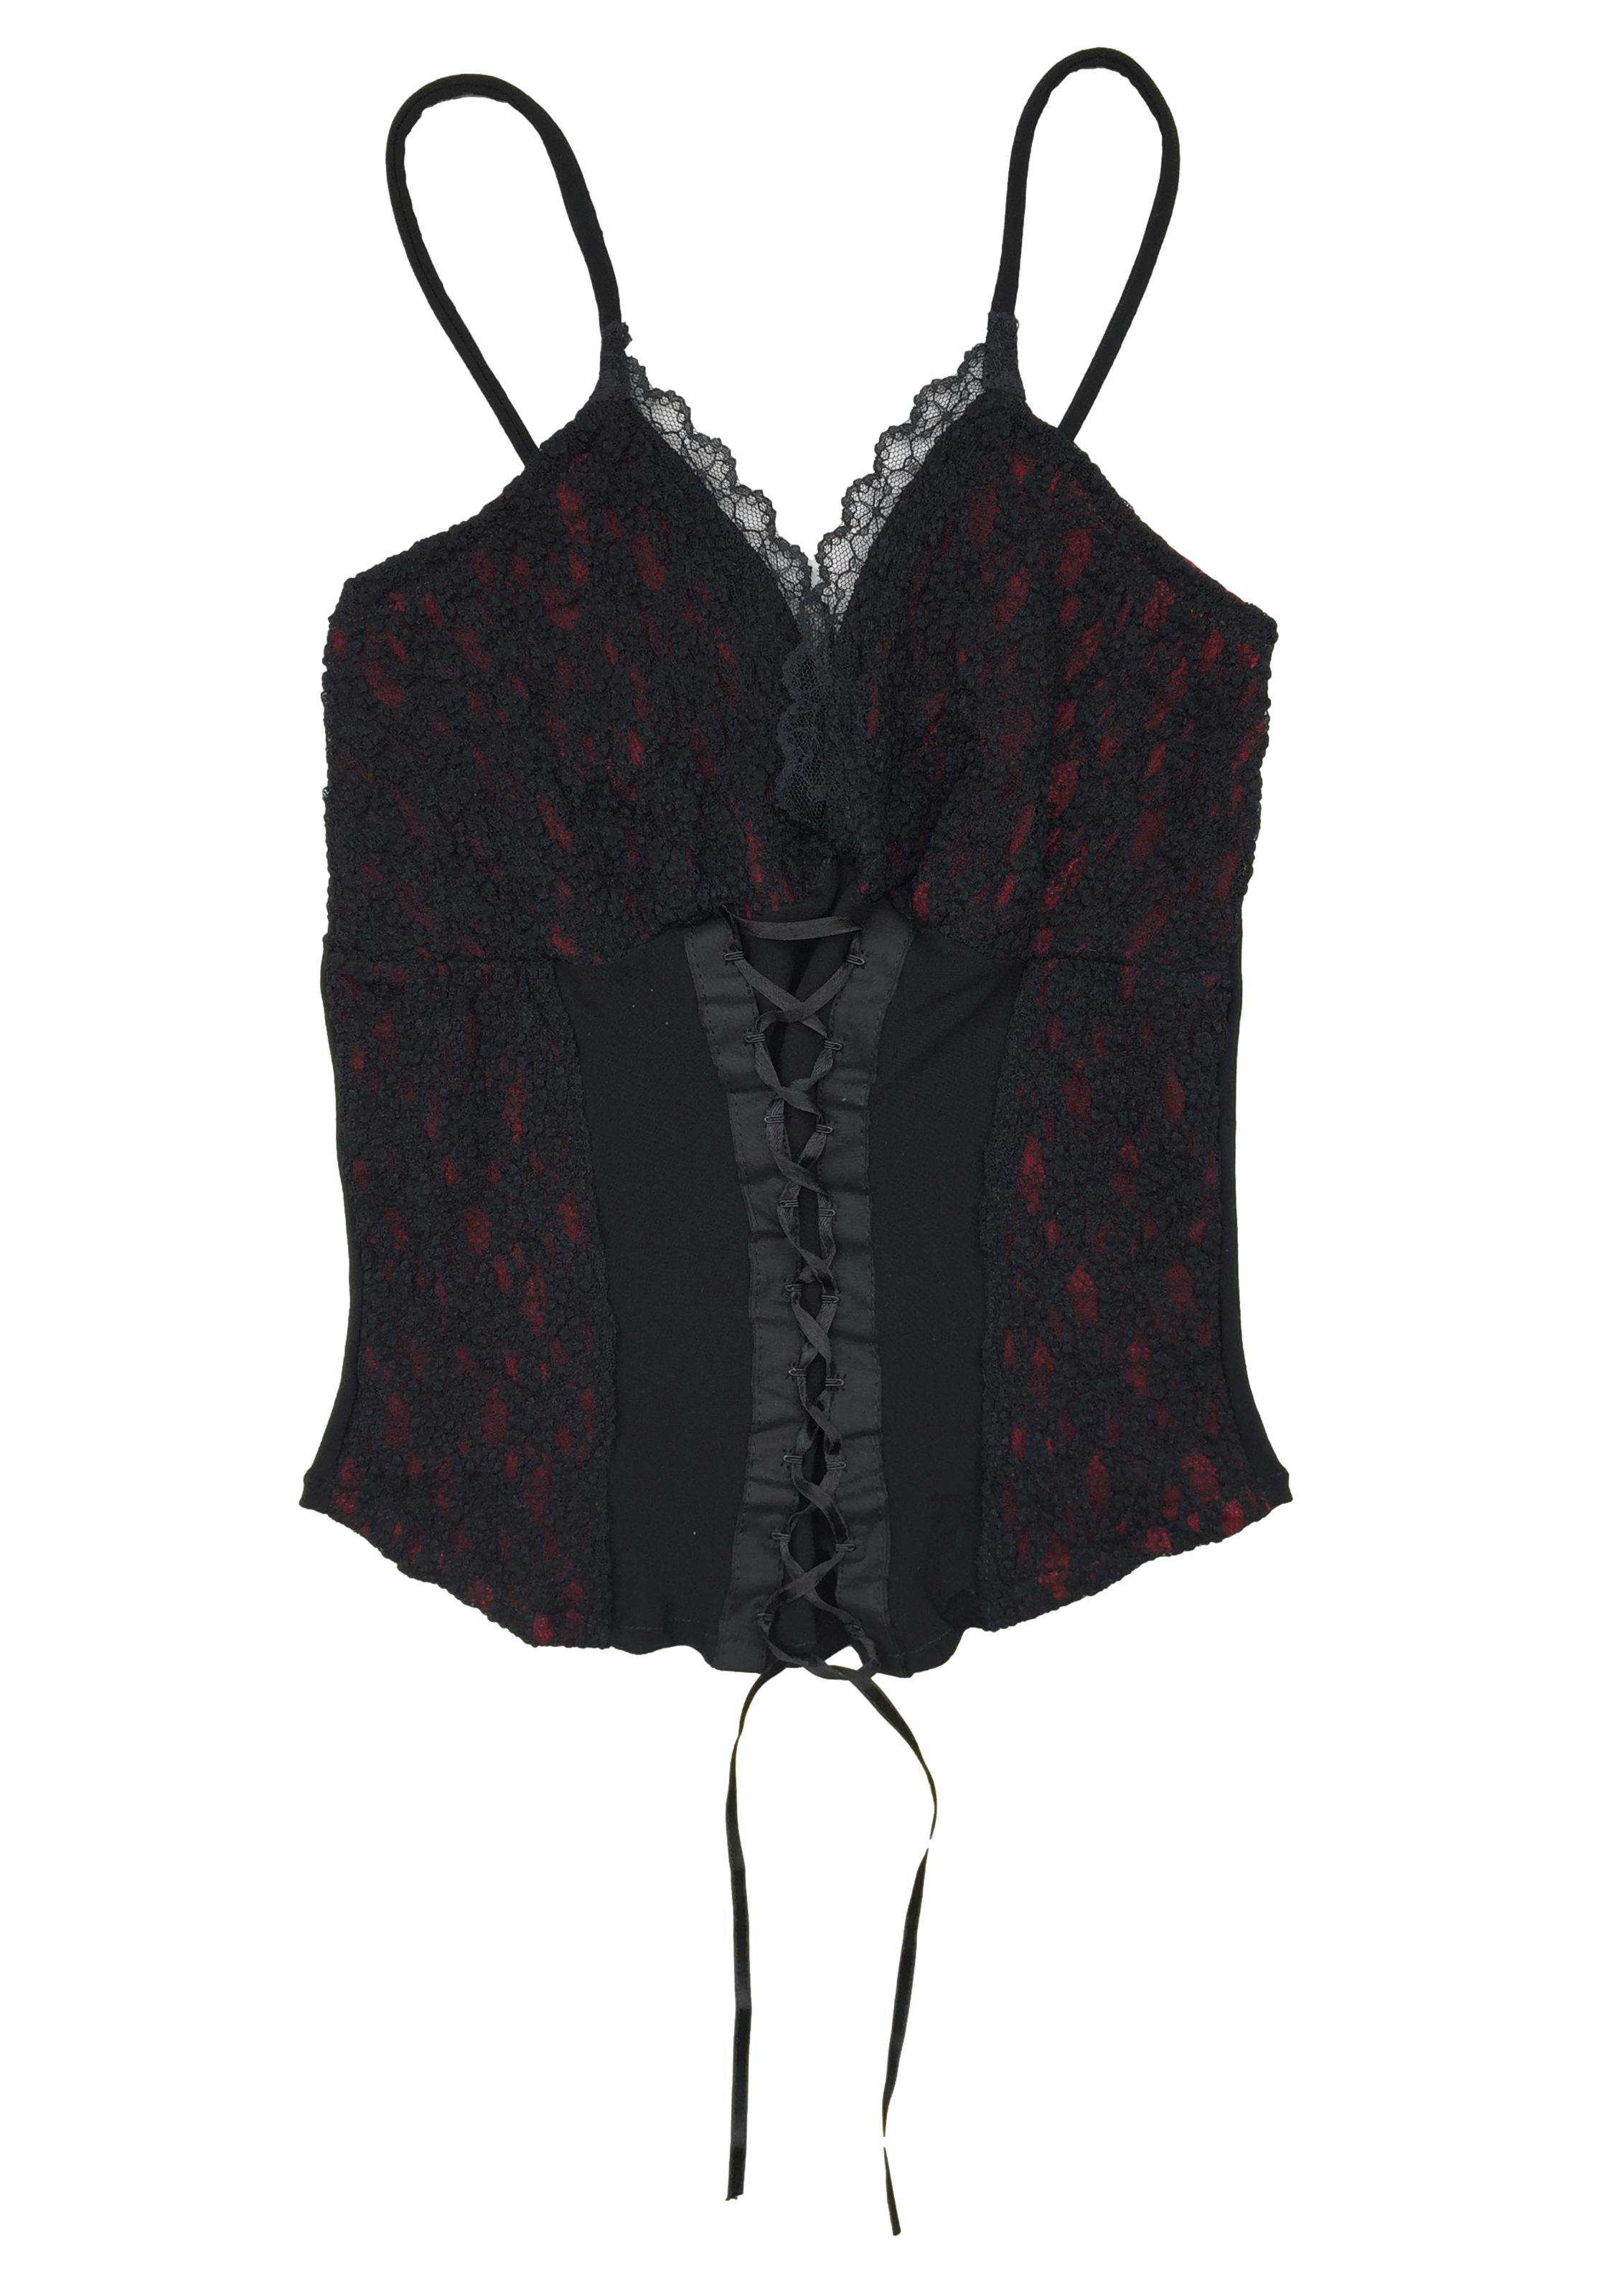 Top de encaje negro con forro rojo, broches tipo corset delatero, elástico posterior. Busto: 60cm (sin estirar), Largo: 45cm. 